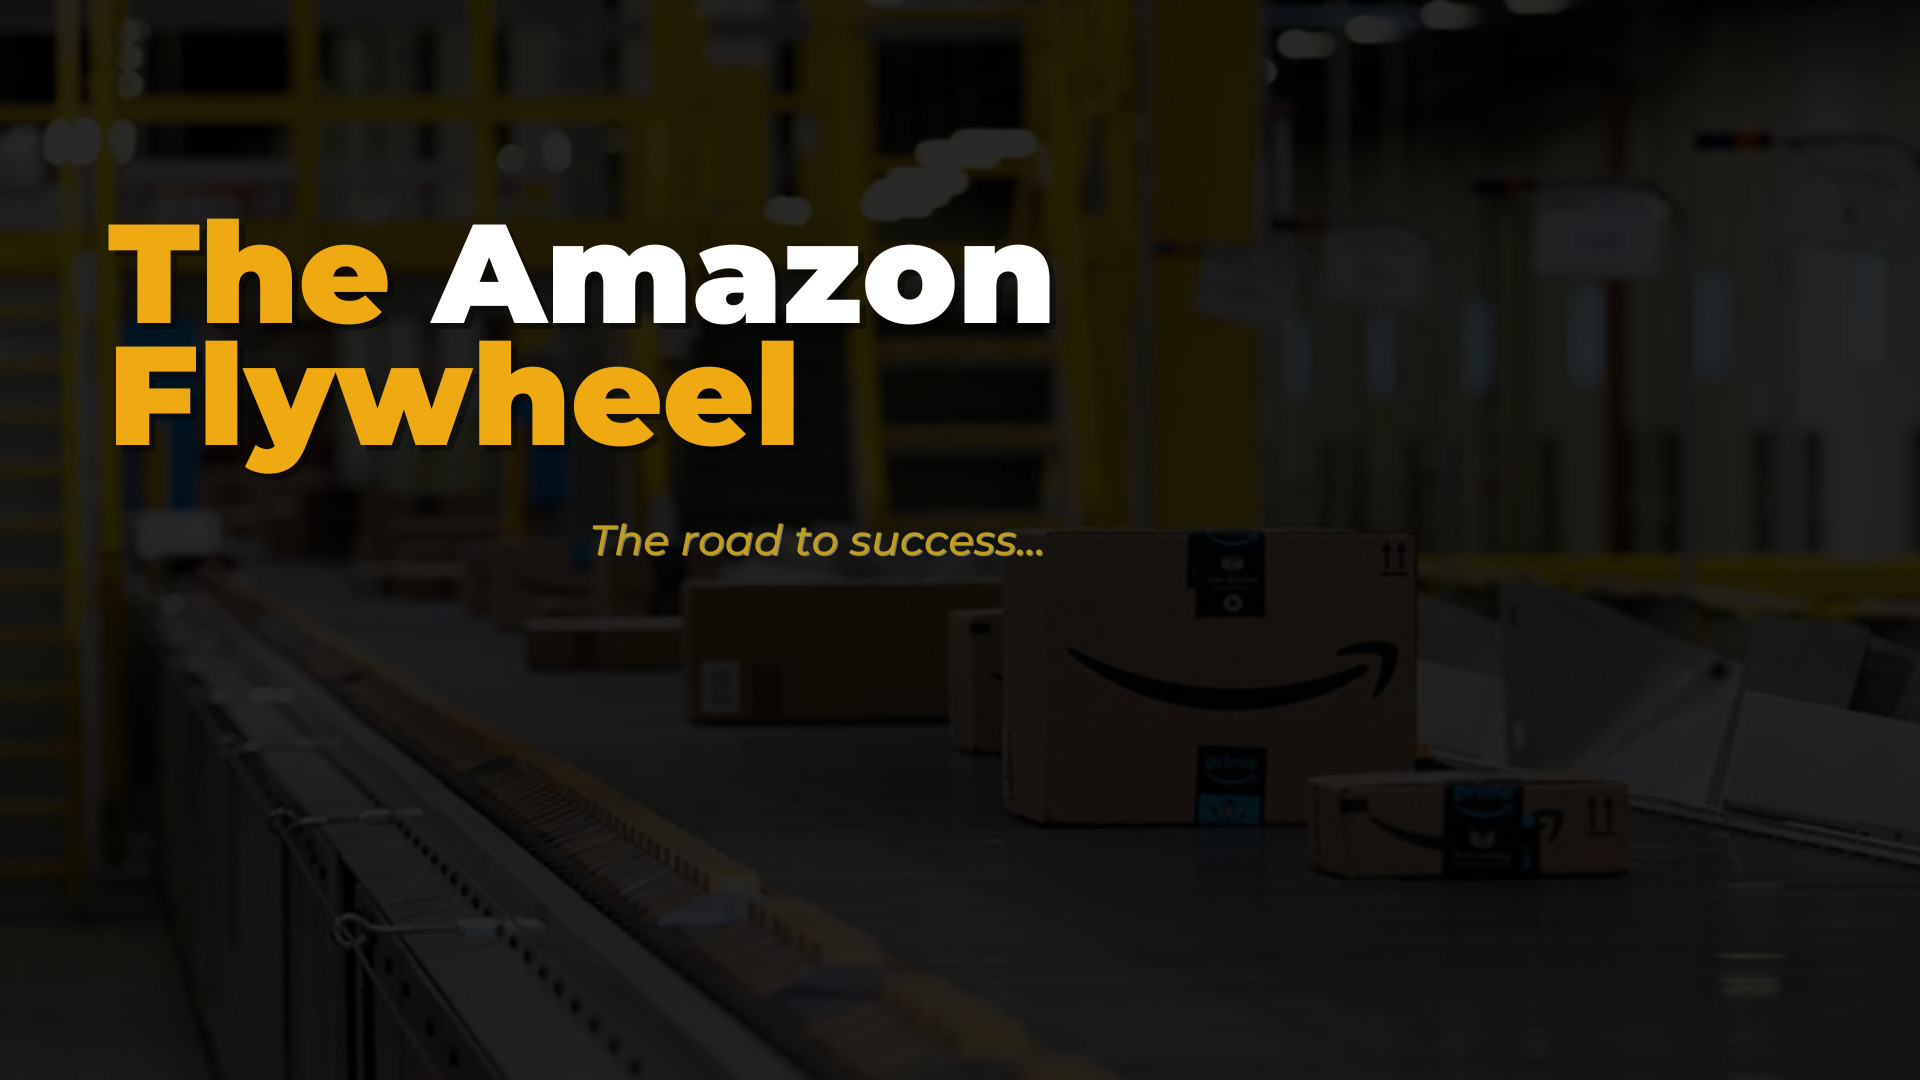 The Amazon Flywheel Business Model